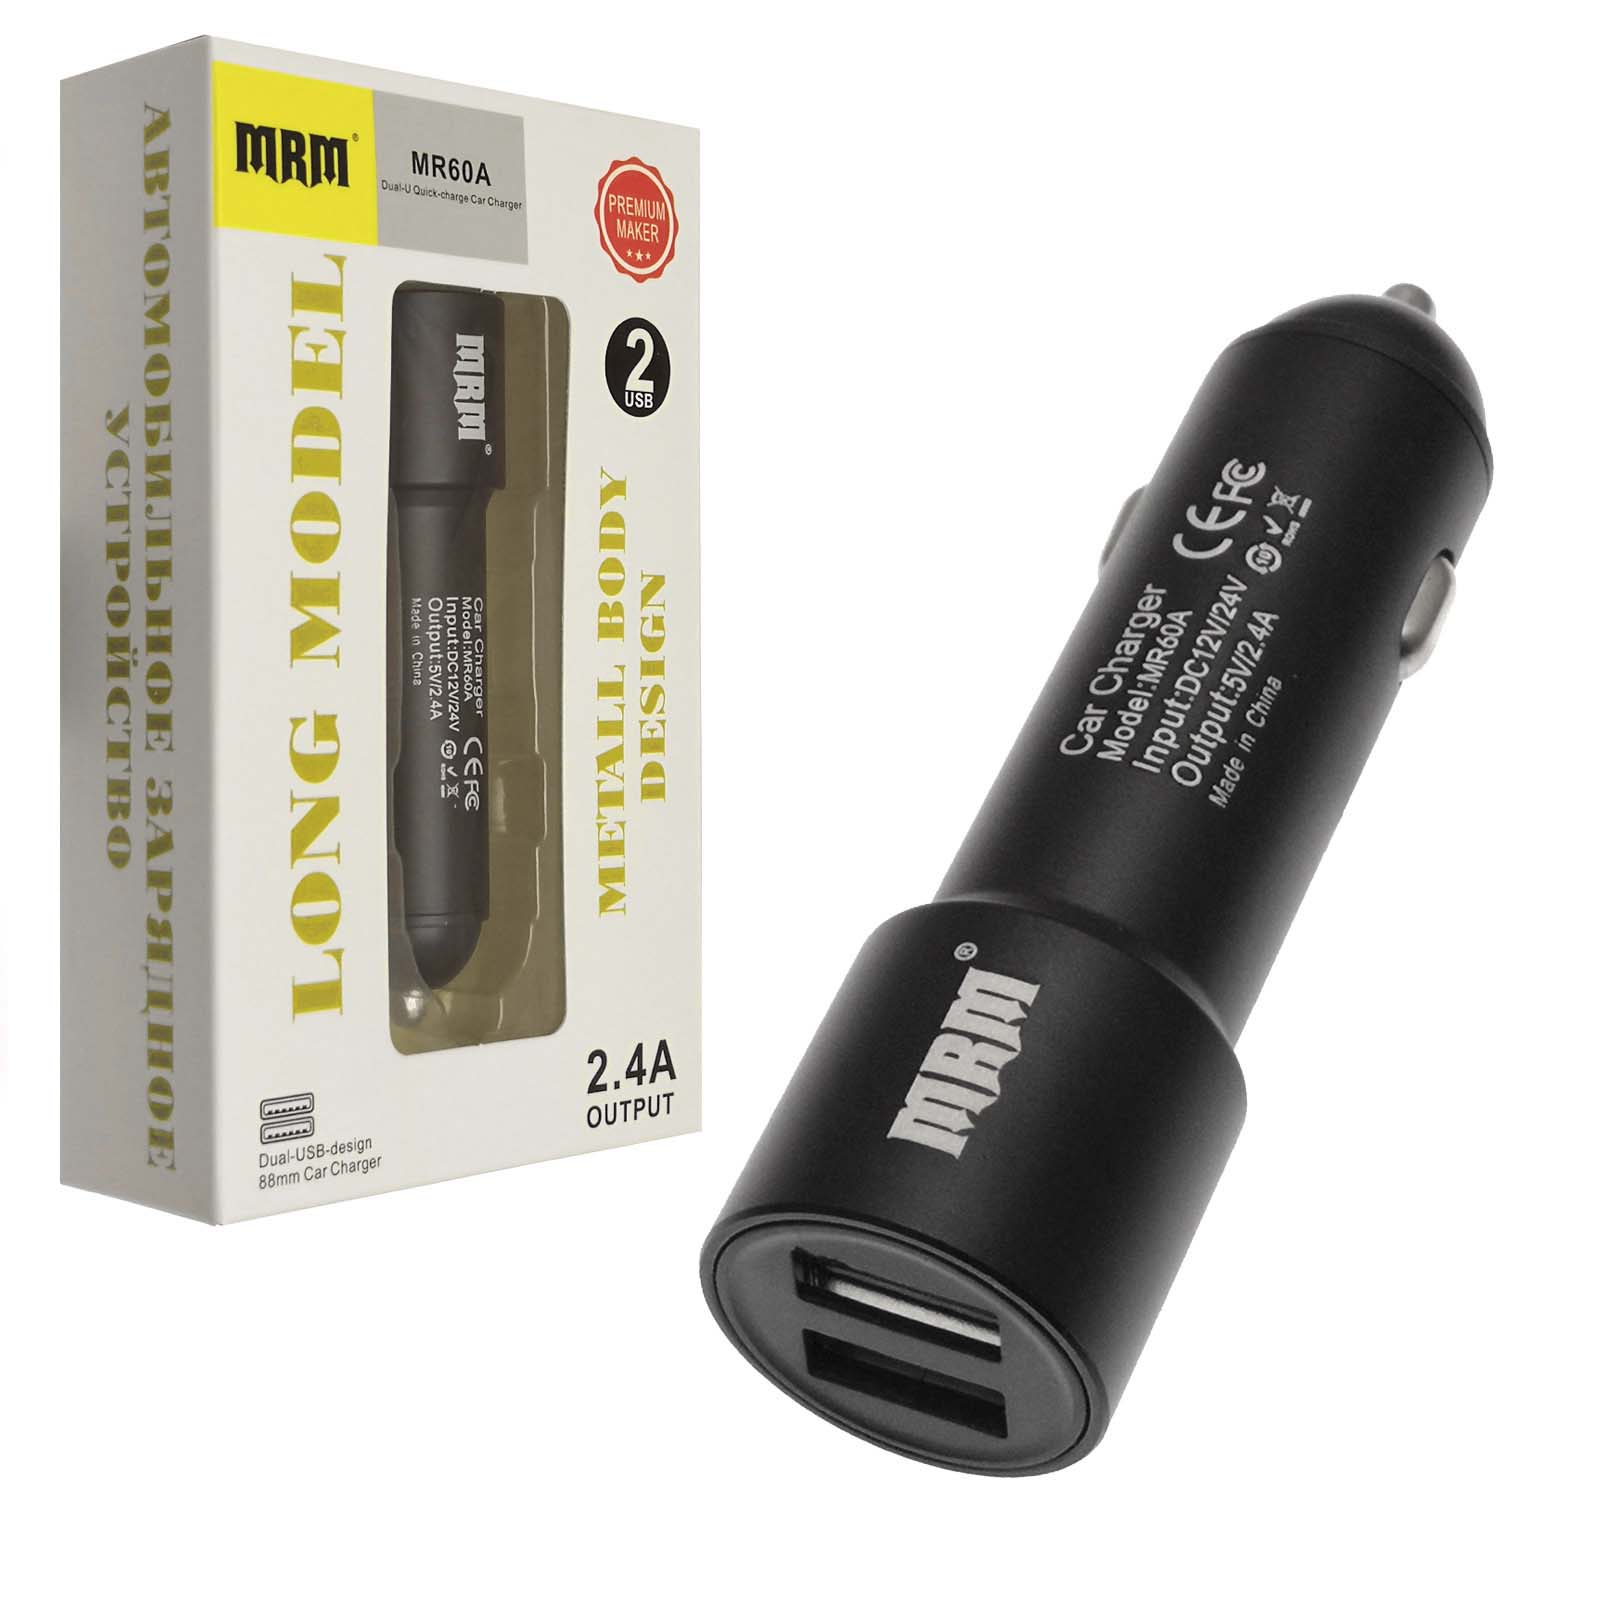 АЗУ (автомобильное зарядное устройство) MRM MR60A на 2 USB, 5V-2.1A, алюминиевый корпус, цвет черный